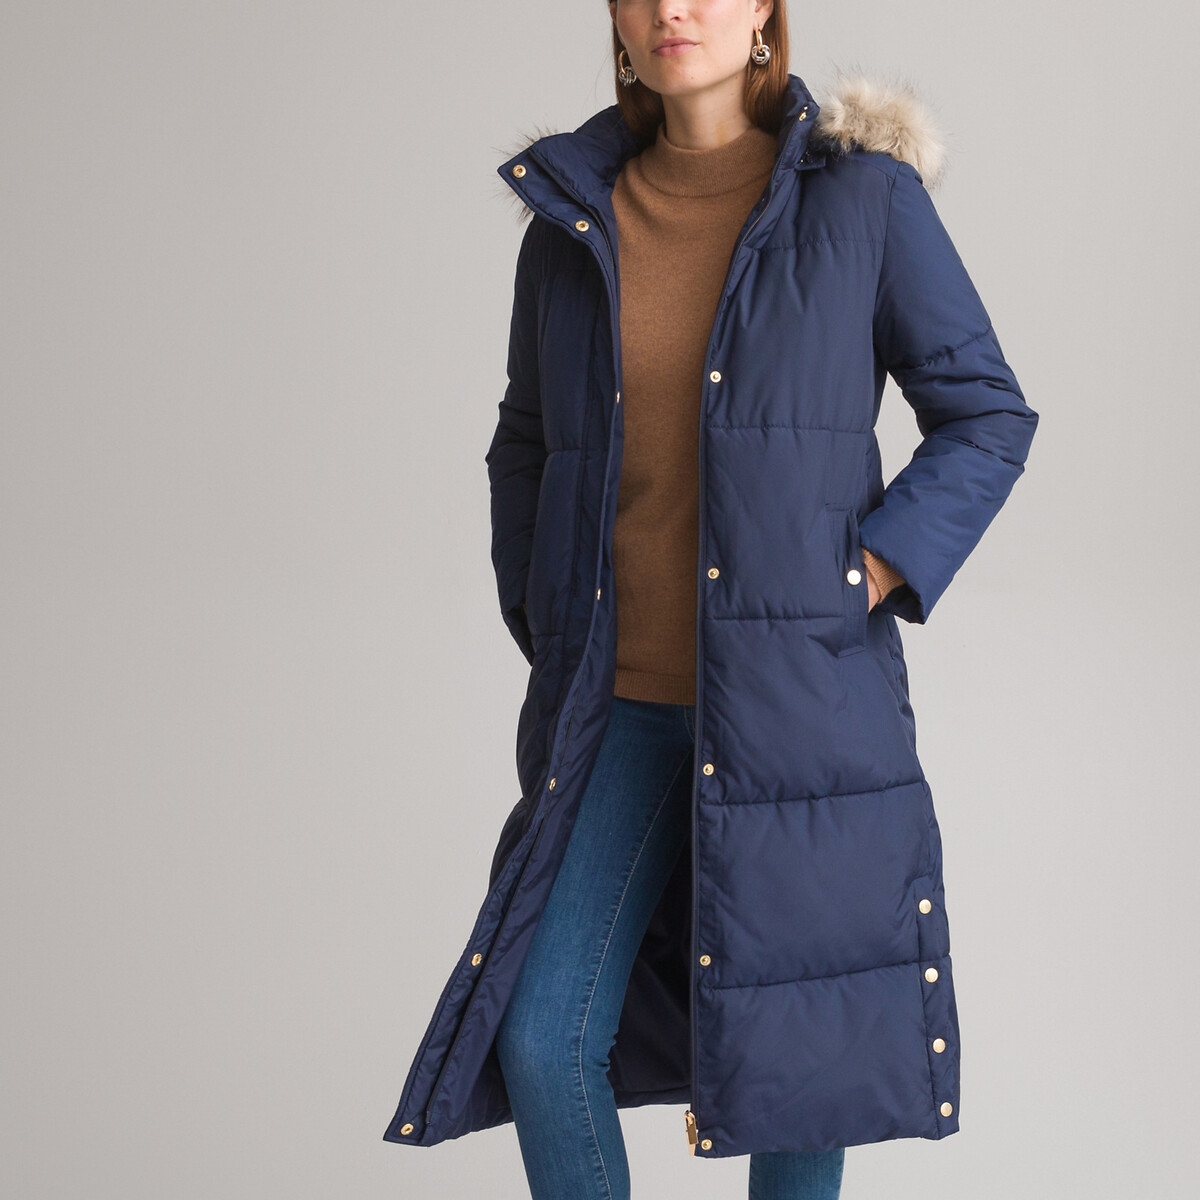 Куртка стеганая длинная застежка на молнию зимняя модель 36 (FR) - 42 (RUS) синий куртка стеганая средней длины застежка на молнию зимняя модель 40 fr 46 rus красный